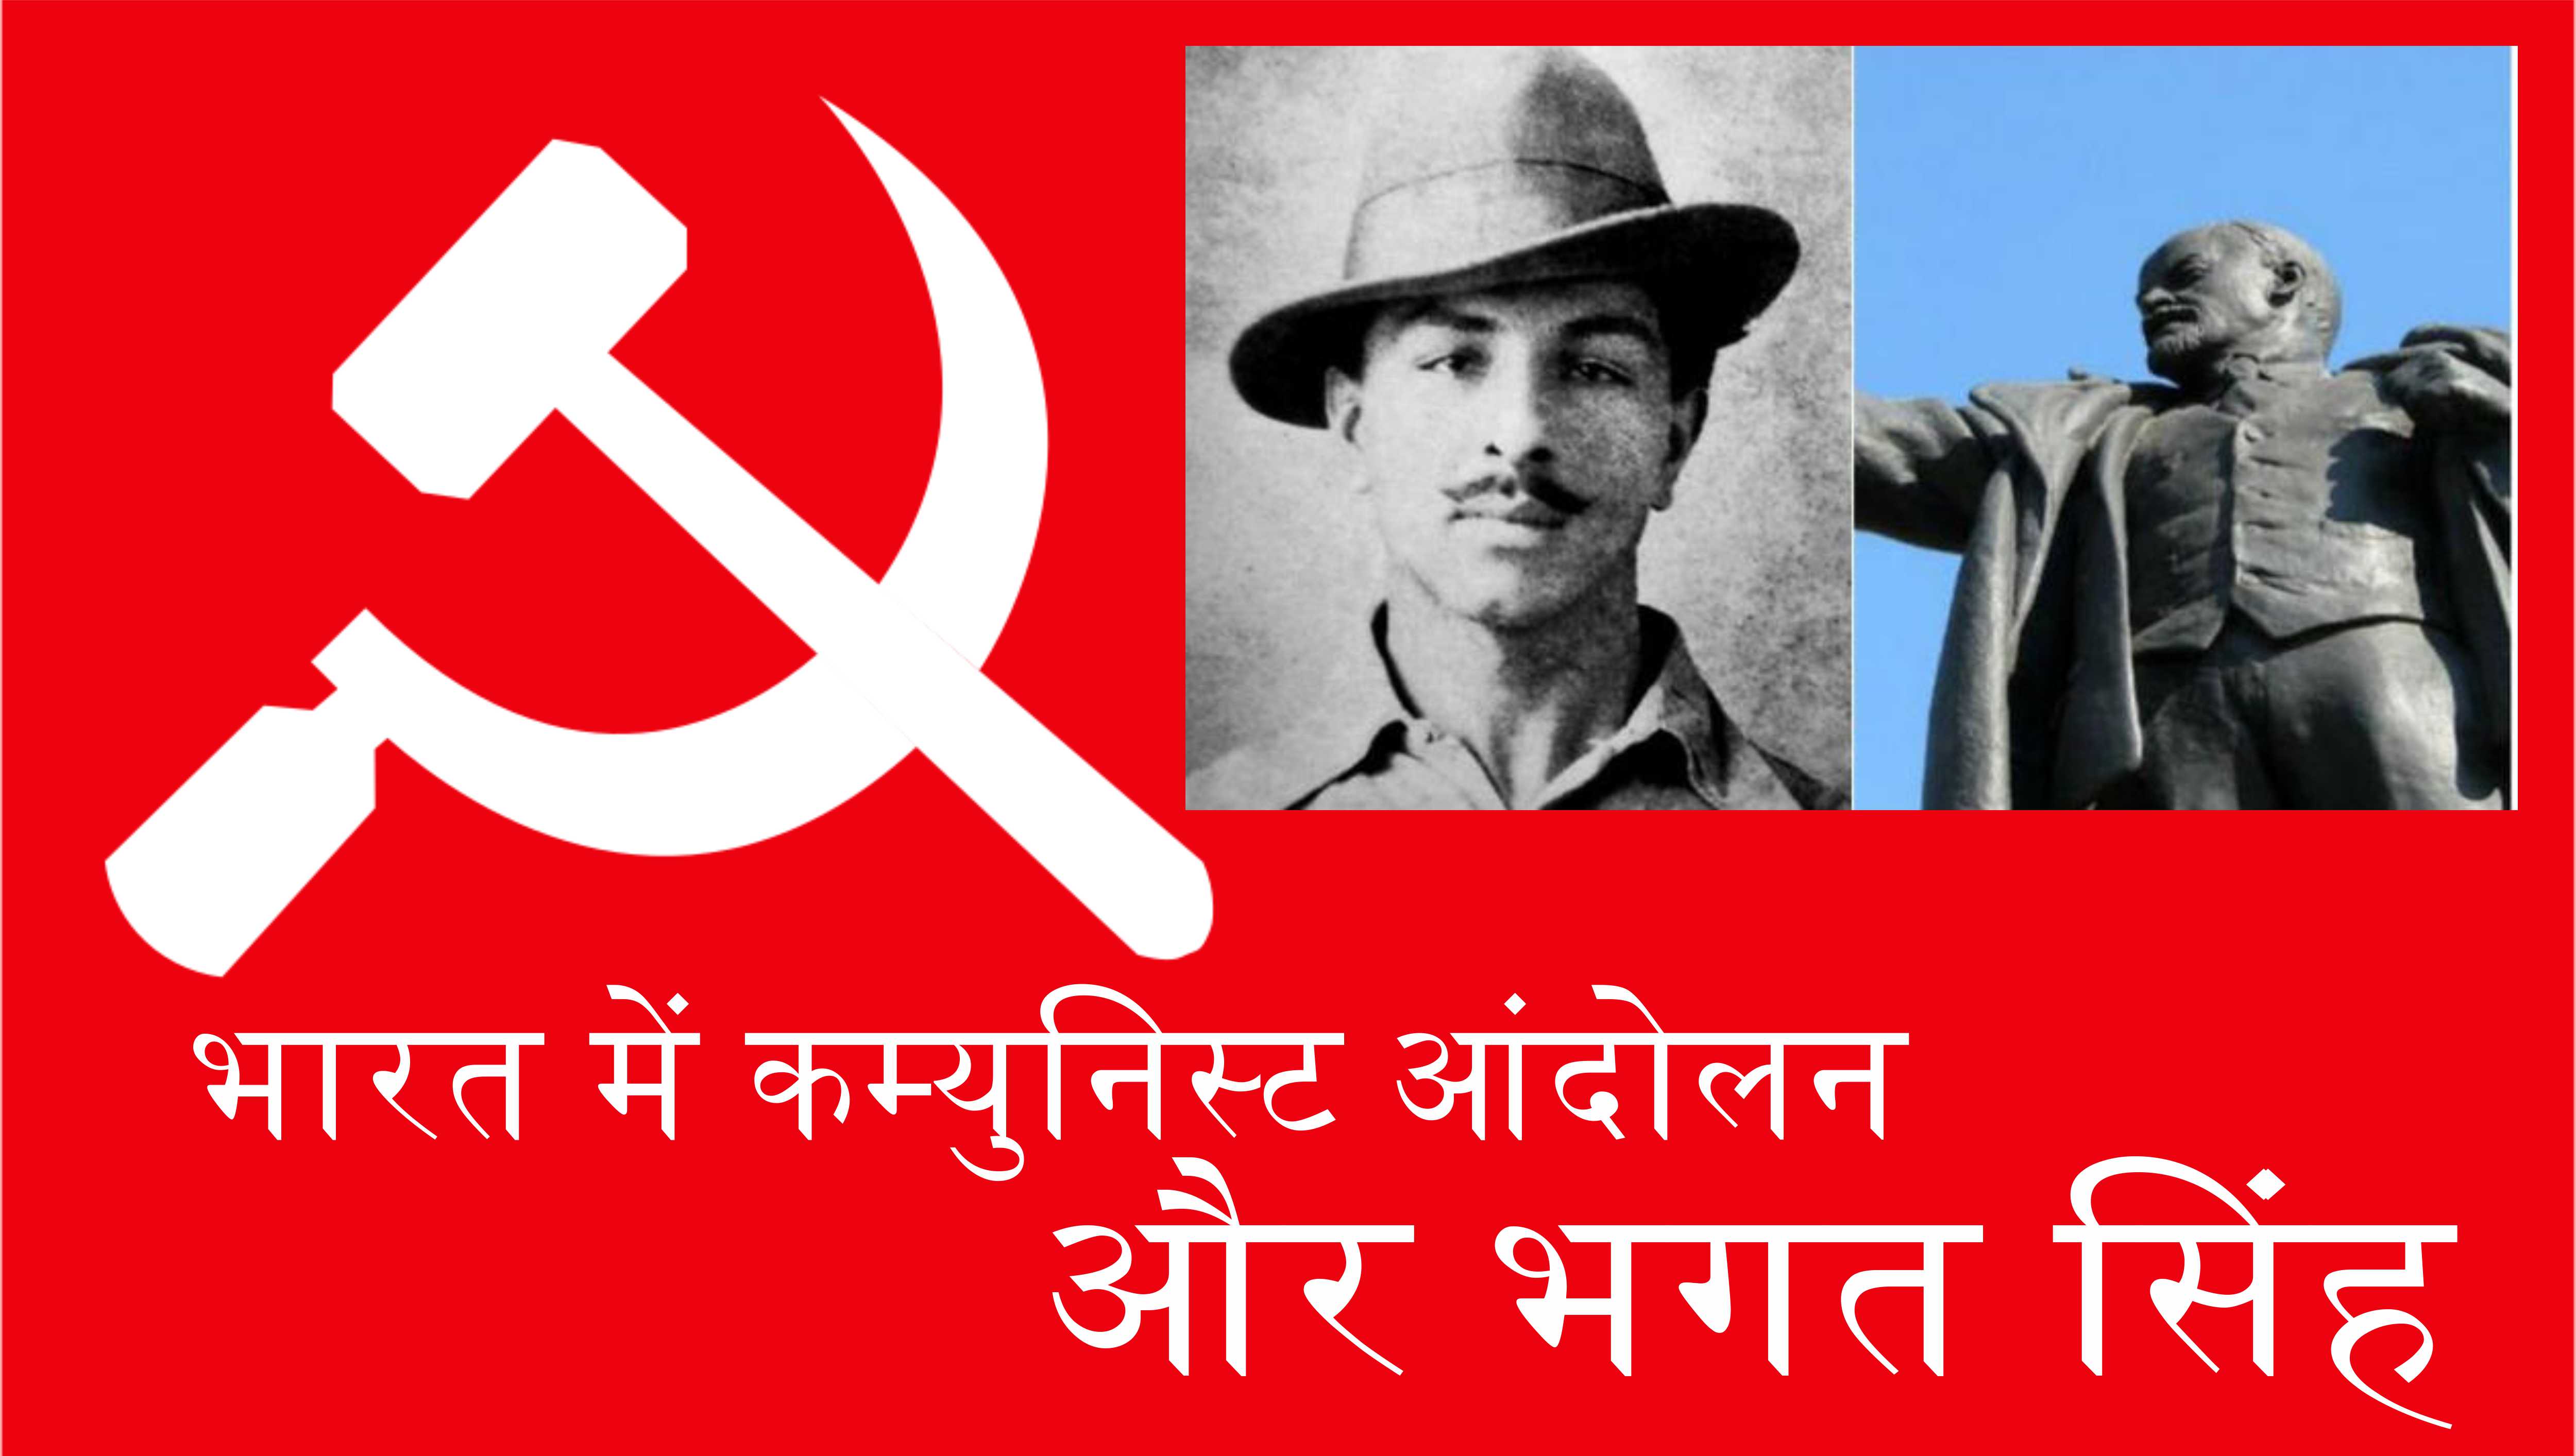 भारत में कम्युनिस्ट आंदोलन का शुरुआती दौर, सर्वहारा आंदोलन और भगत सिंह